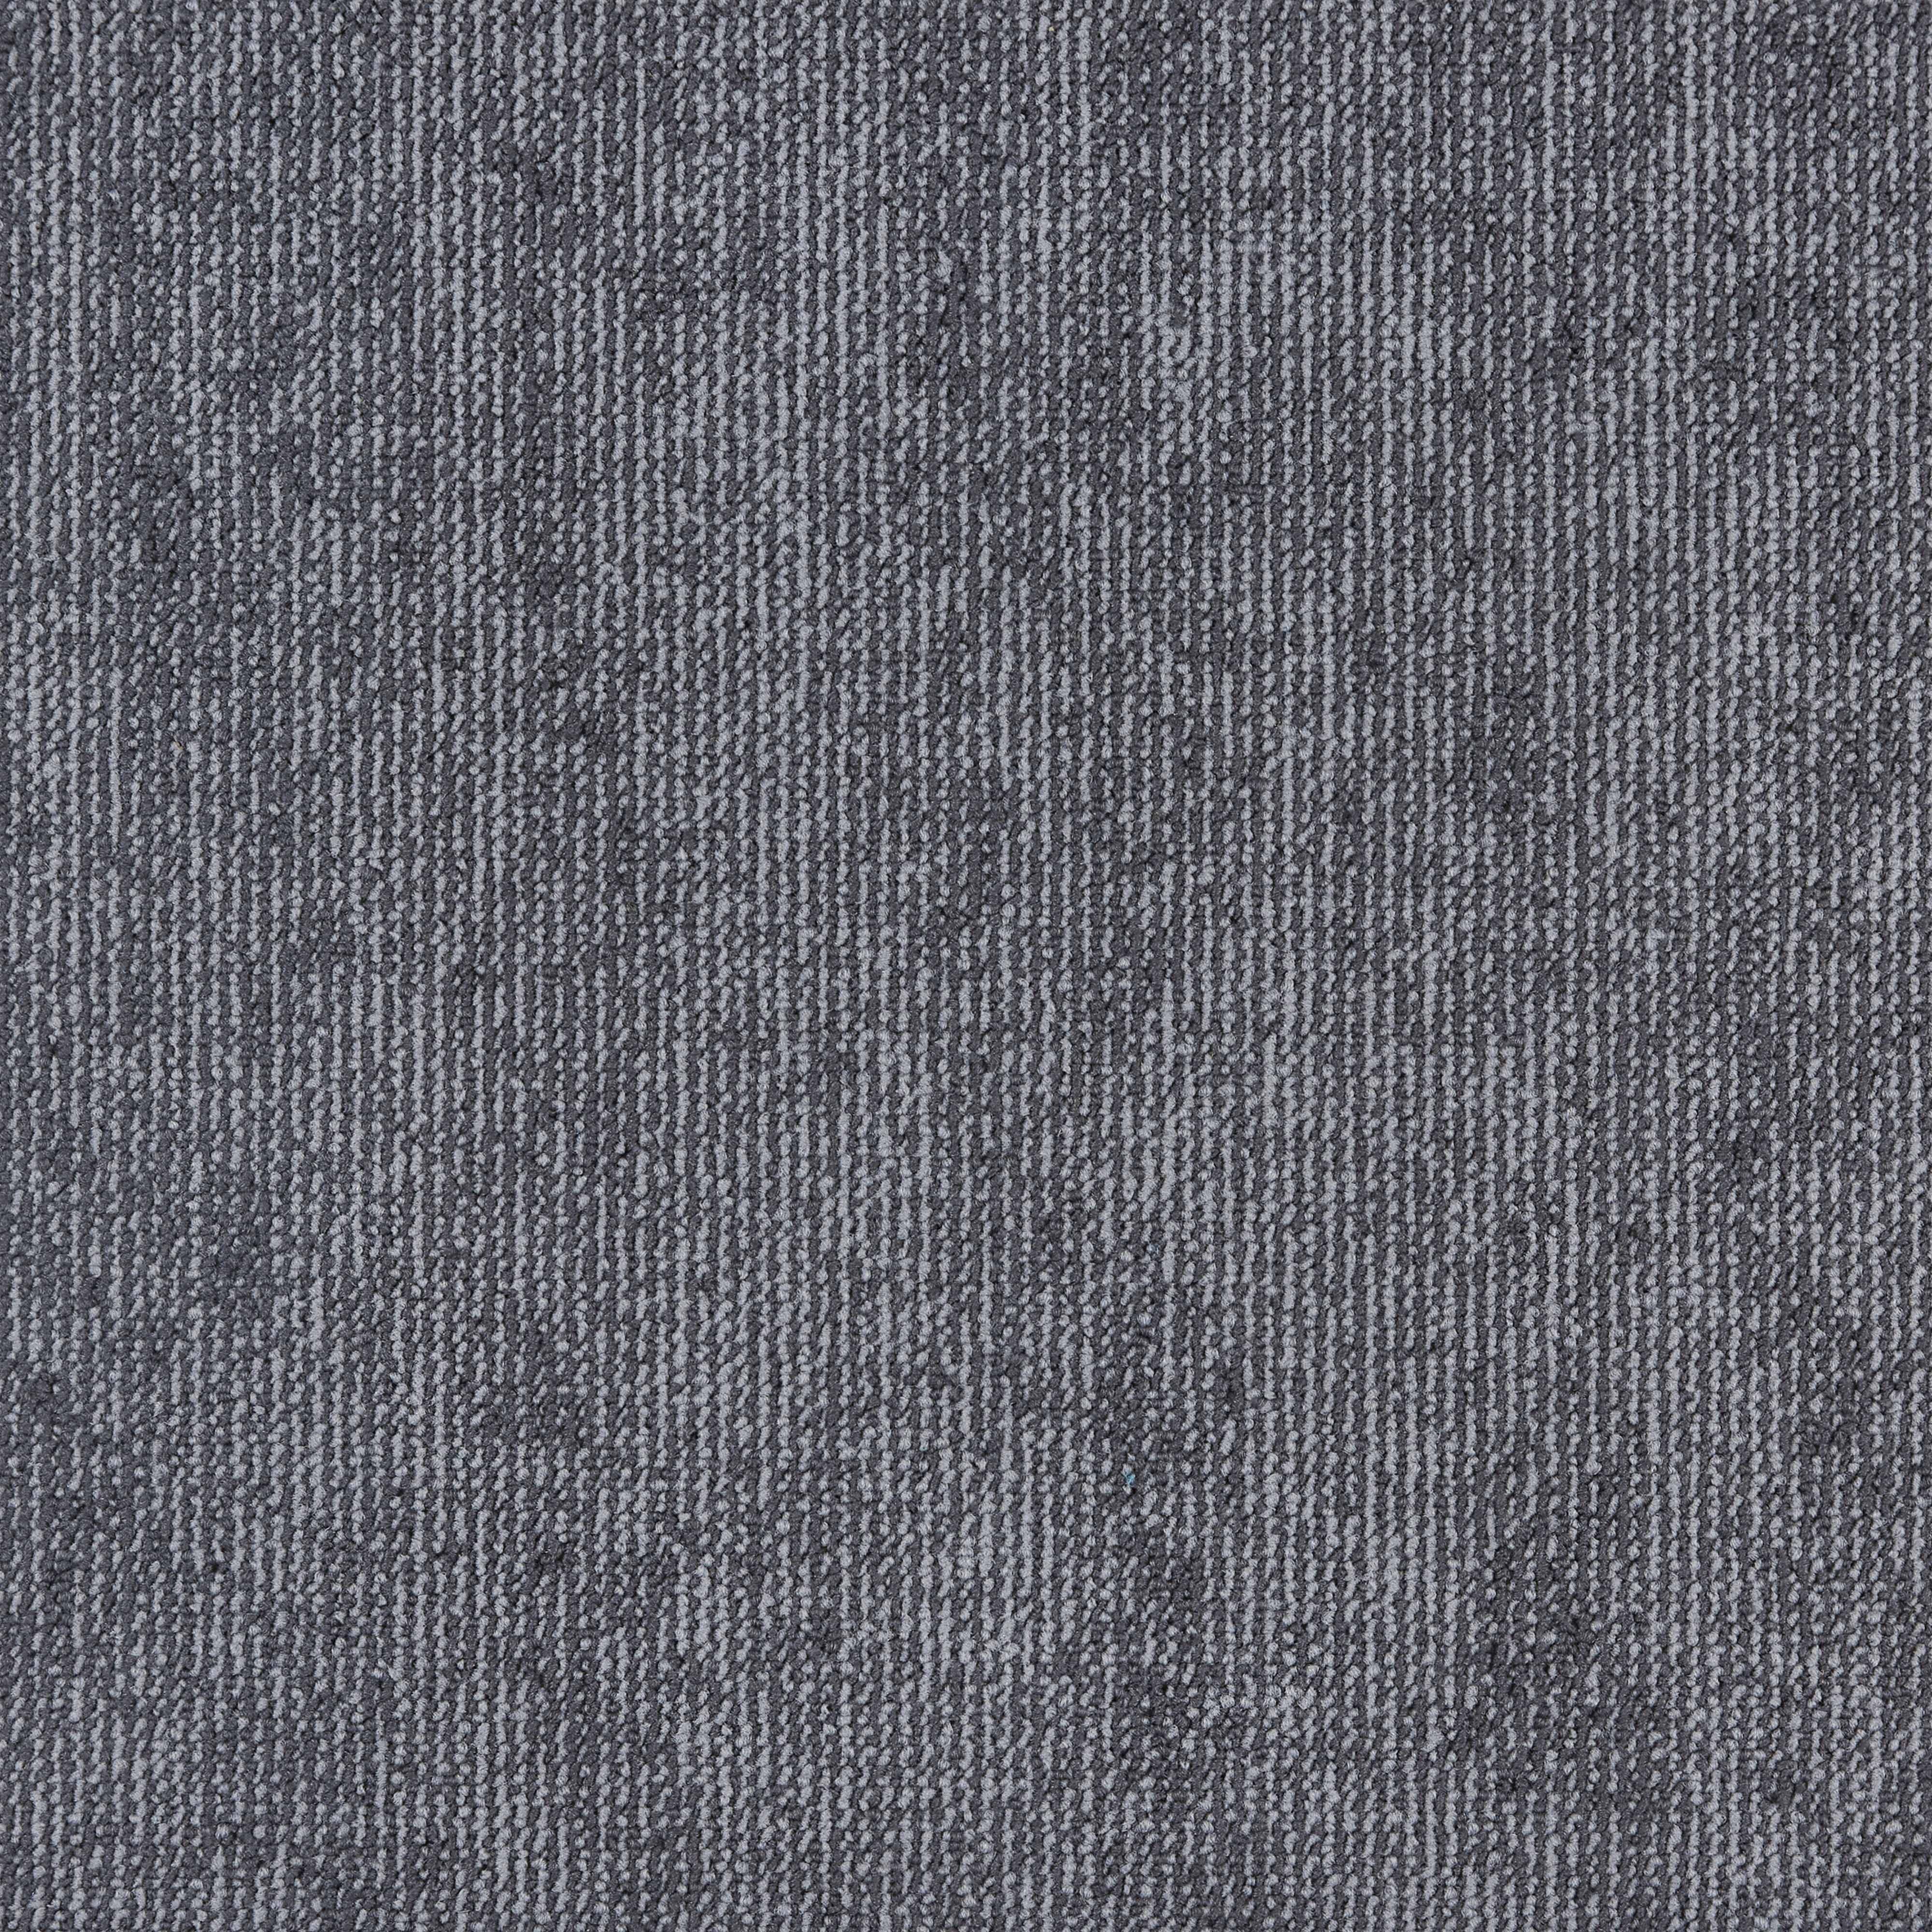 Ковровая плитка Illusion - InnovFlor (ИнновФлор) Illusion F01 0.5*0.5 м